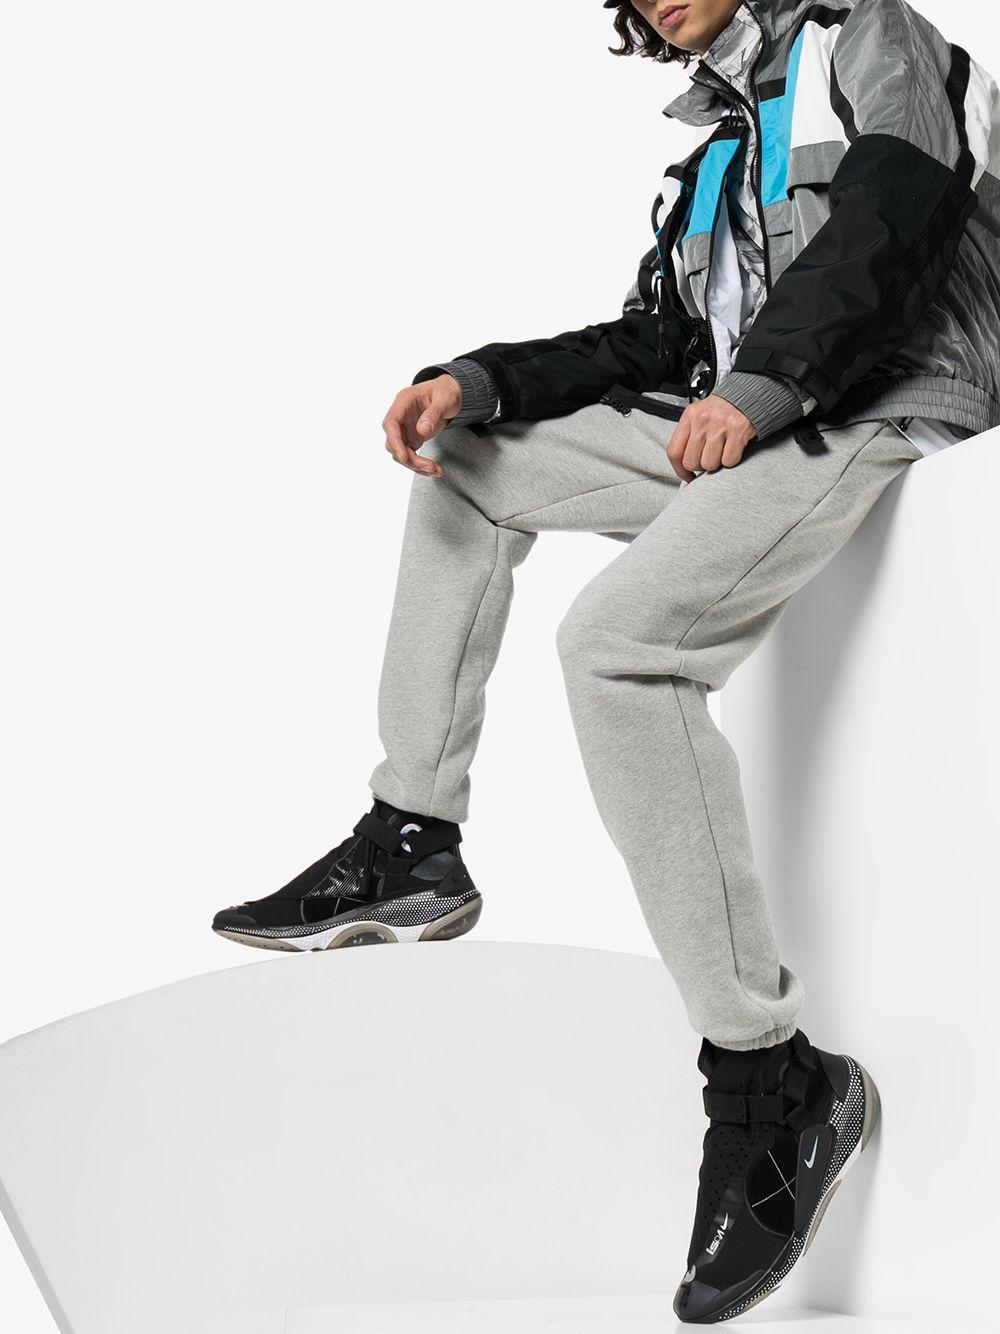 Nike Ispa Joyride Envelope Sneakers in Black for Men - Save 34% | Lyst